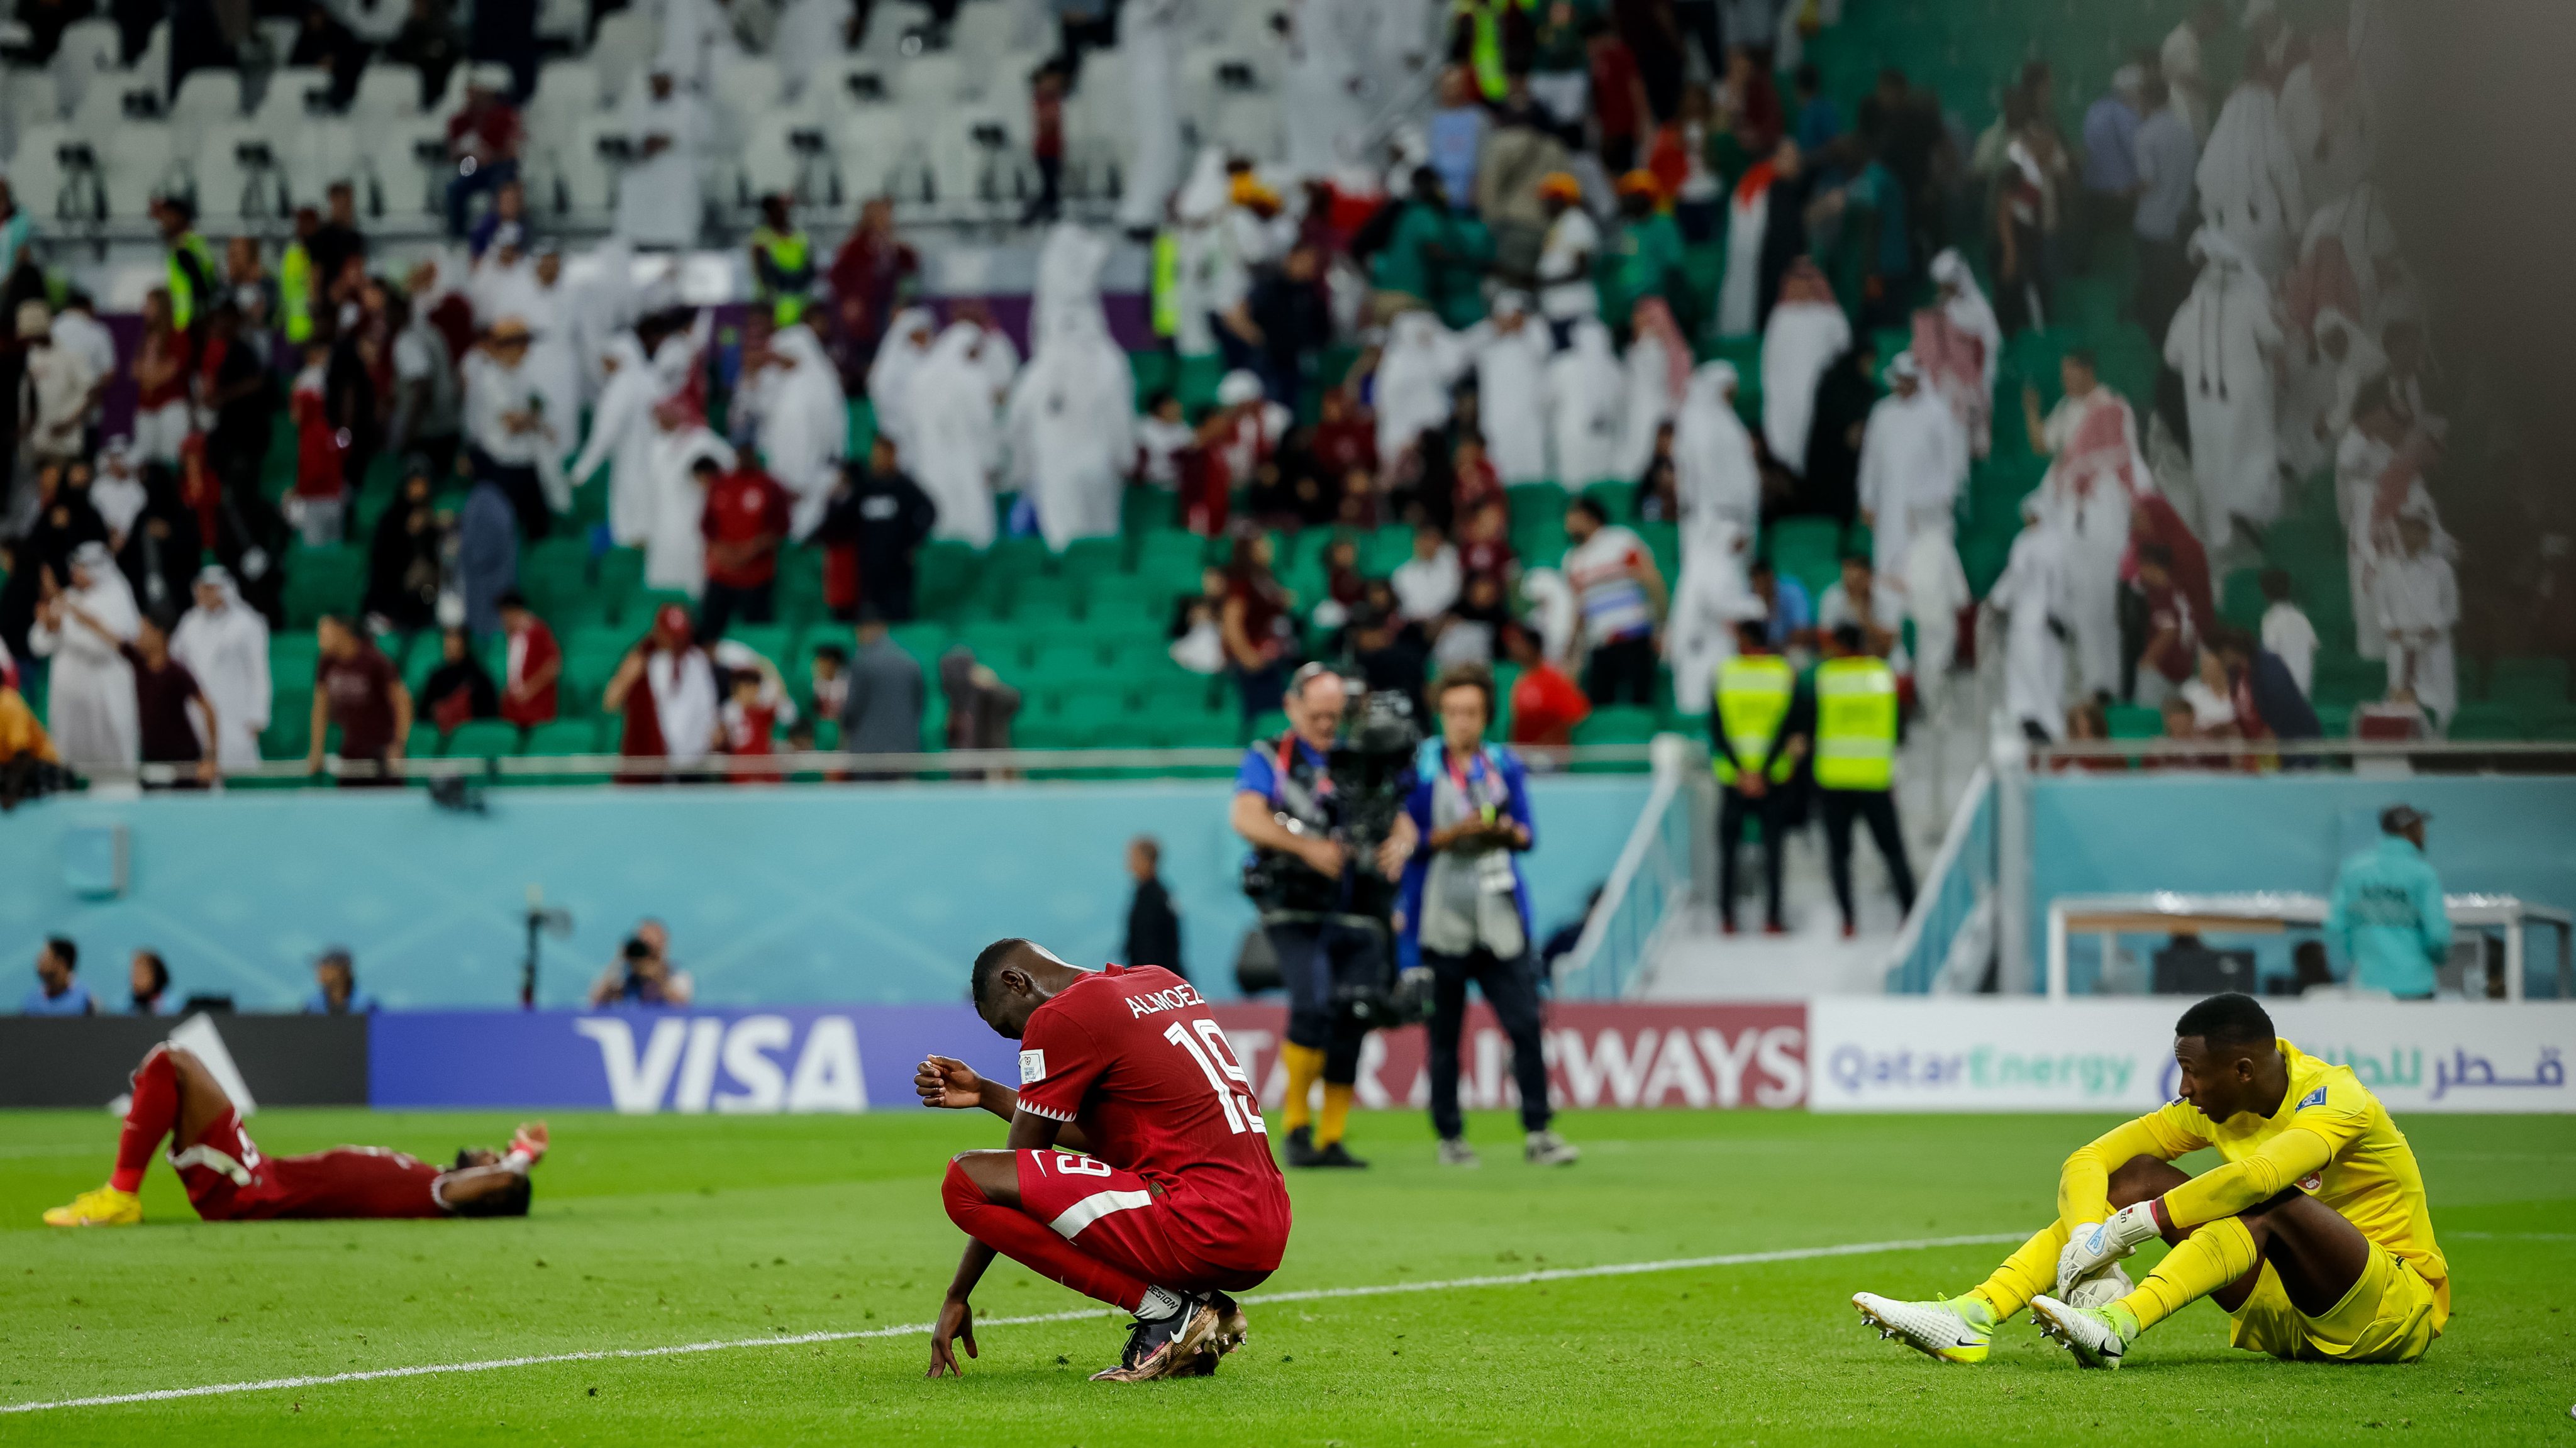 Qatar v Senegal: Group A - FIFA World Cup Qatar 2022